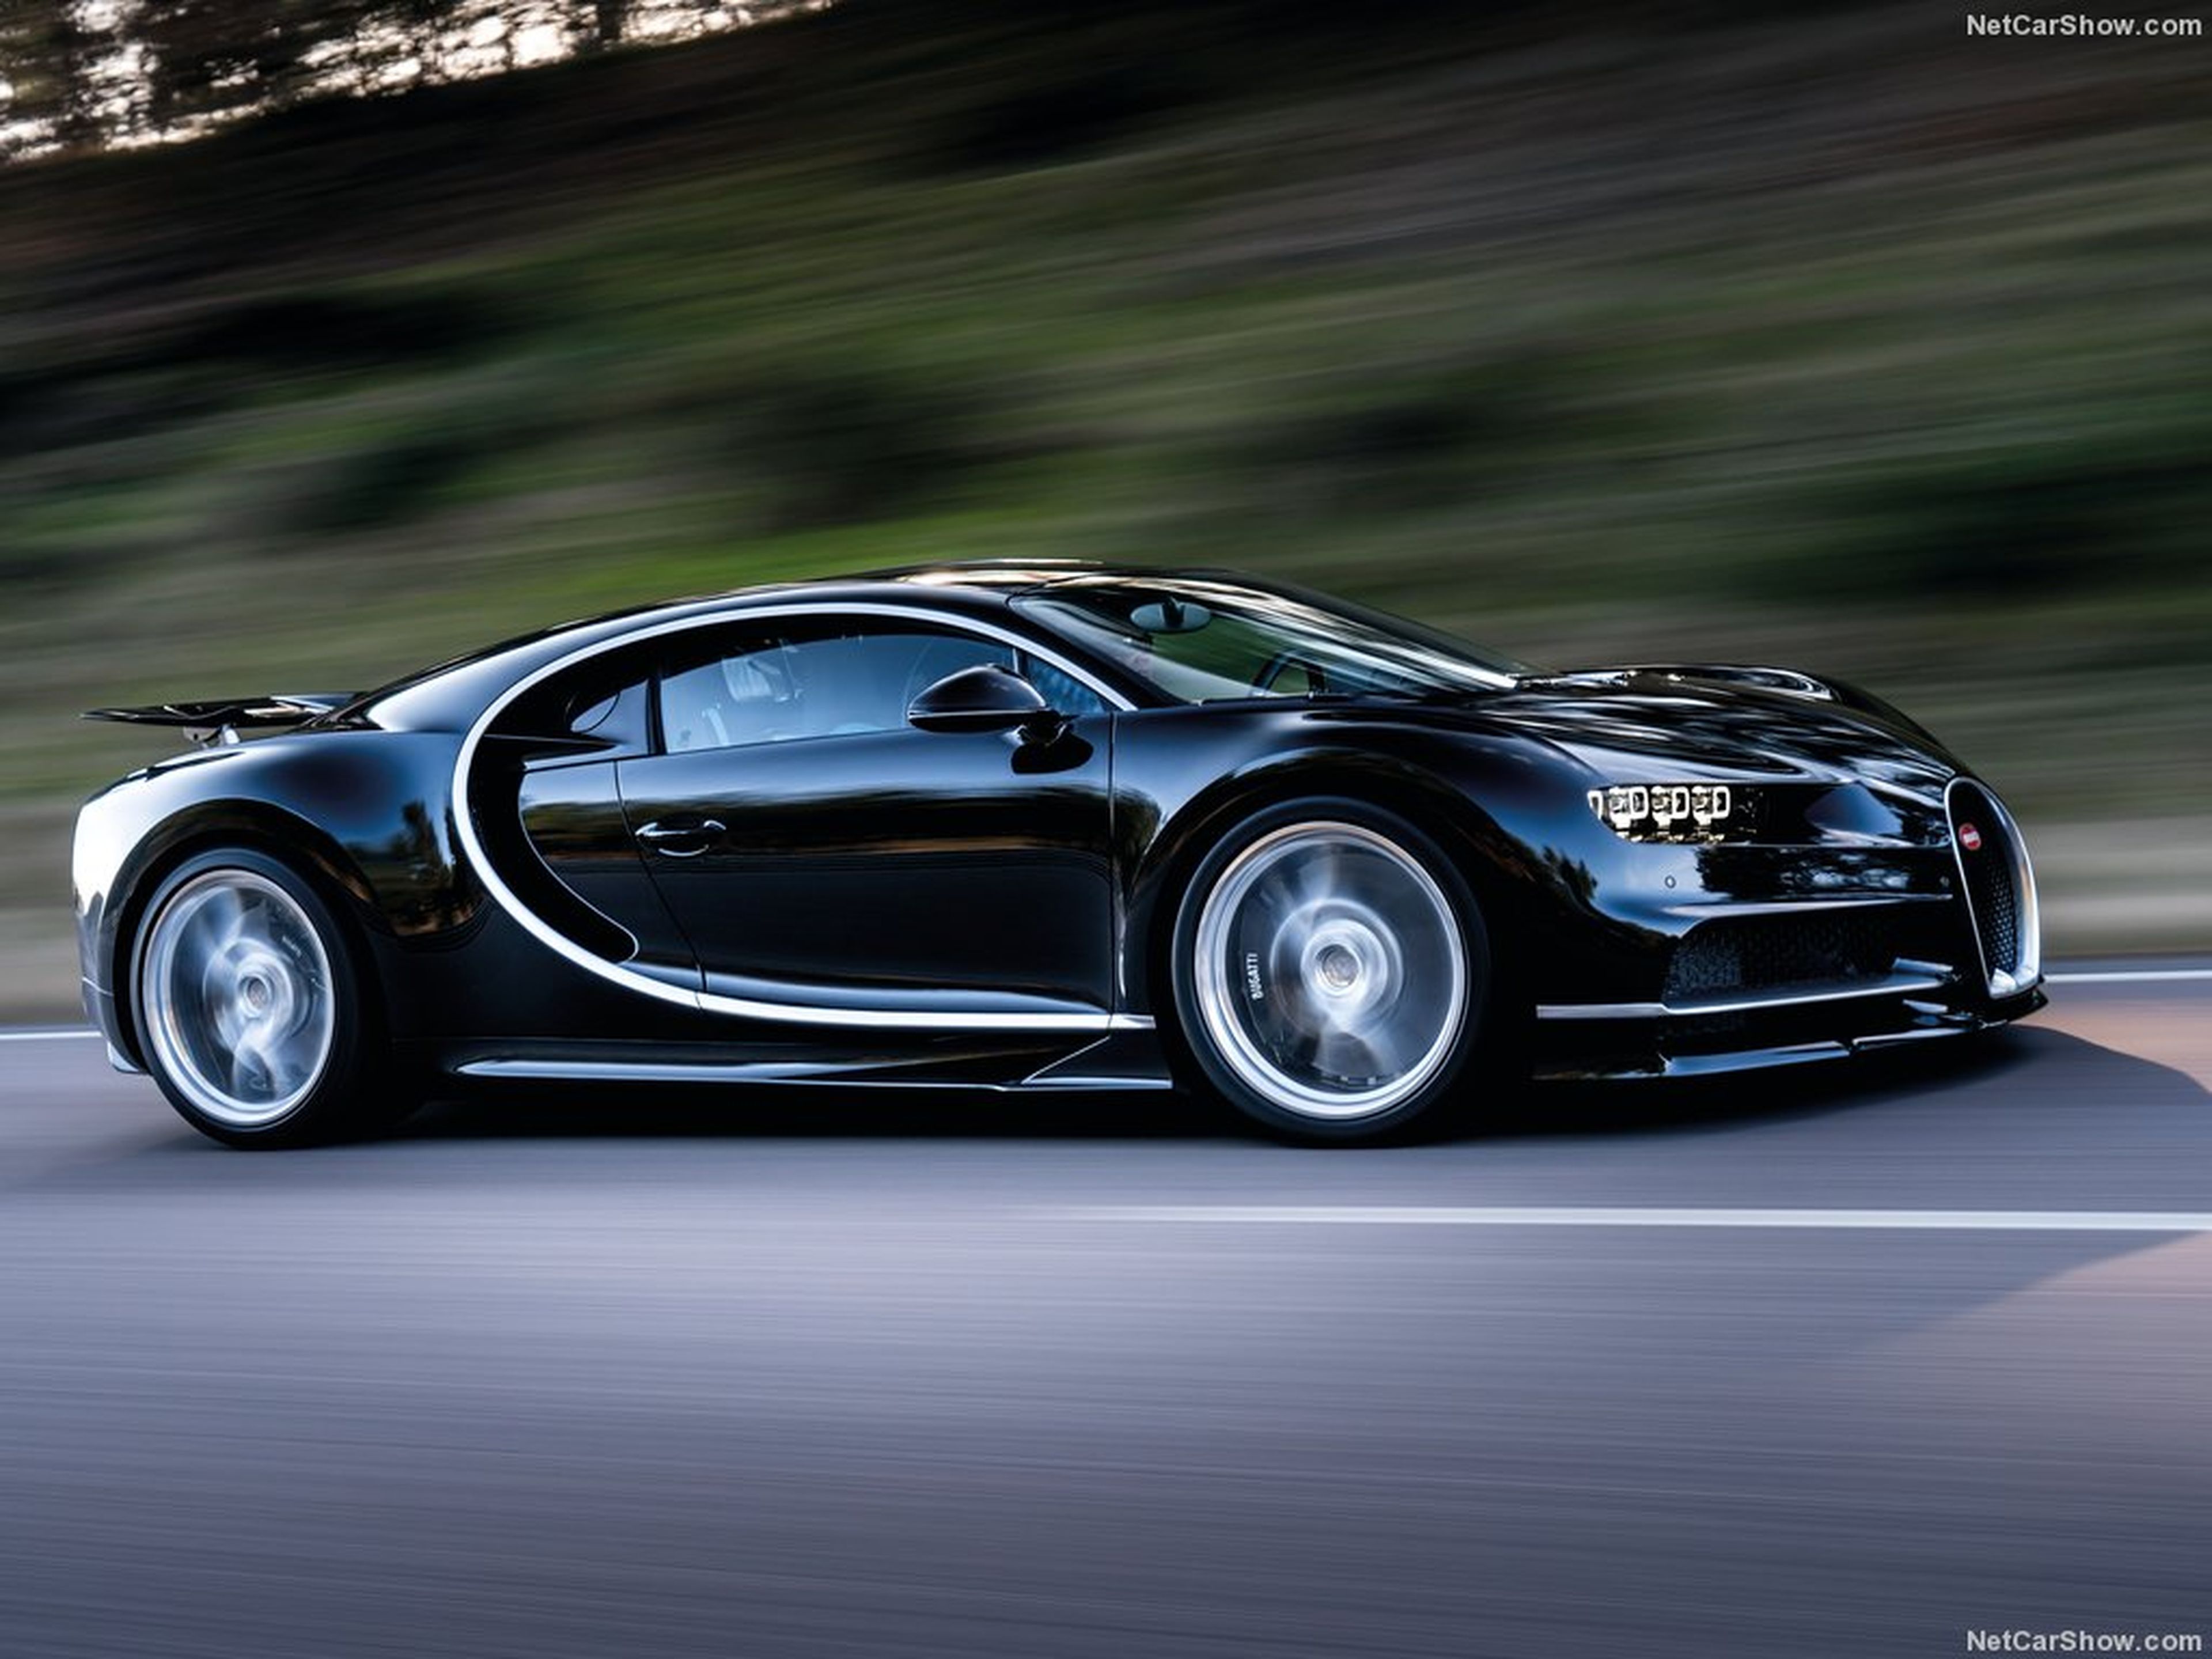 VÍDEO: ¿Qué corre más? Un Bugatti Chiron o un Tesla Roadster